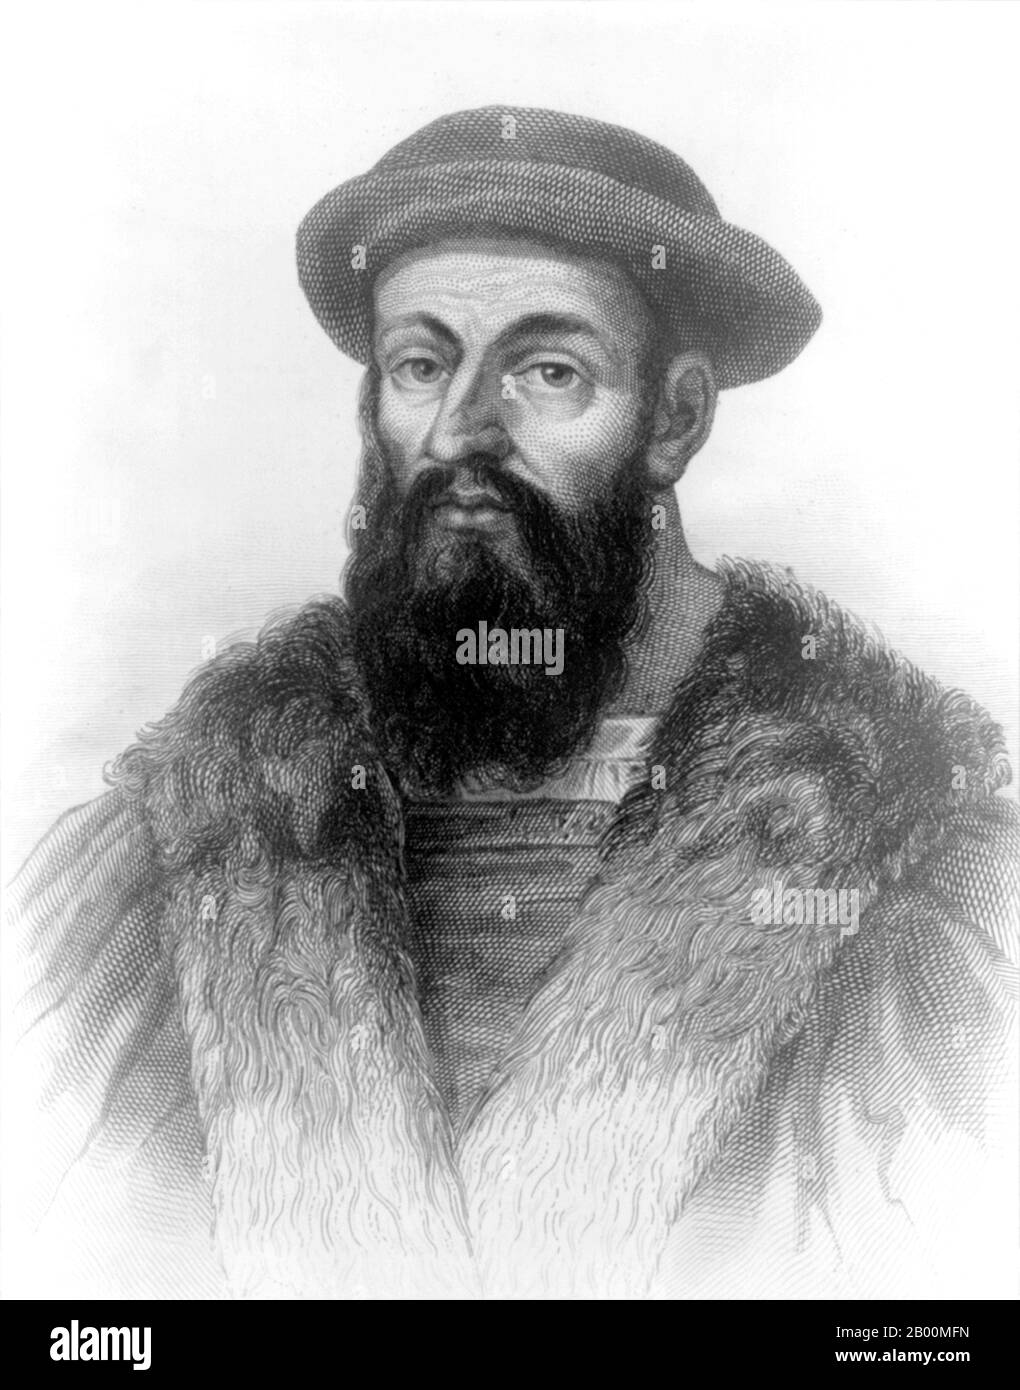 Portugal: Ferdinand Magellan (1480-1521) Portugiesischer Forscher und Umkreisnavigator. Stich eines unbekannten Künstlers, 1810. Ferdinand Magellan c. 1480-27. April 1521) war ein portugiesischer Entdecker. Er wurde in Sabrosa, im Norden Portugals, geboren, erhielt aber später die spanische Staatsangehörigkeit, um König Karl I. von Spanien auf der Suche nach einer westwärts Route zu den Gewürzinseln (moderne Maluku-Inseln in Indonesien) zu dienen. Magellans Expedition von 1519-1522 wurde die erste Expedition, die vom Atlantischen Ozean in den Pazifischen Ozean segelte und die erste, die den Pazifik überquerte. Stockfoto